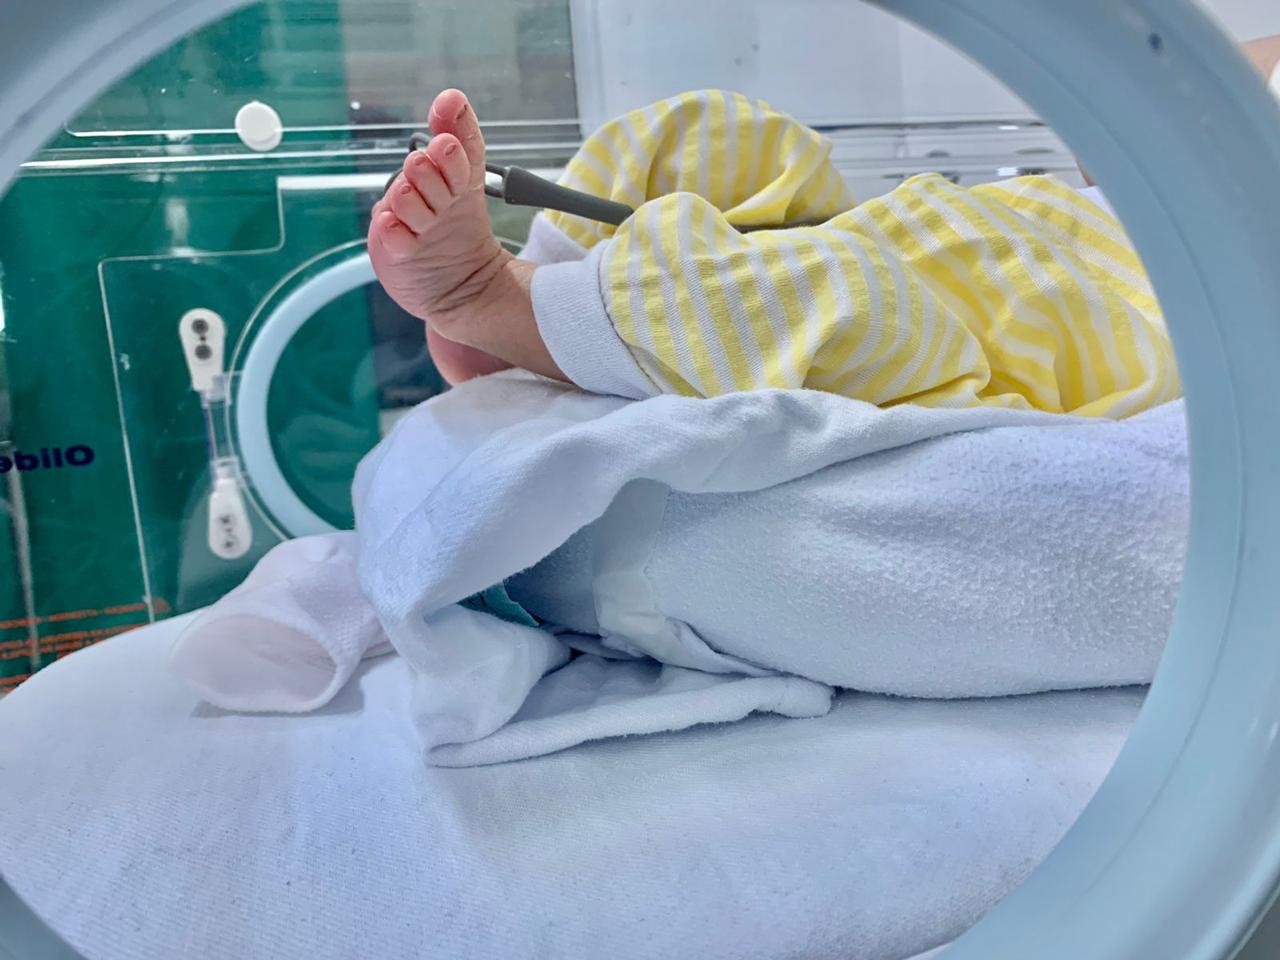 Maternidade Santa Terezinha realiza triagem neonatal para prevenir e diagnosticar doenças em recém-nascidos